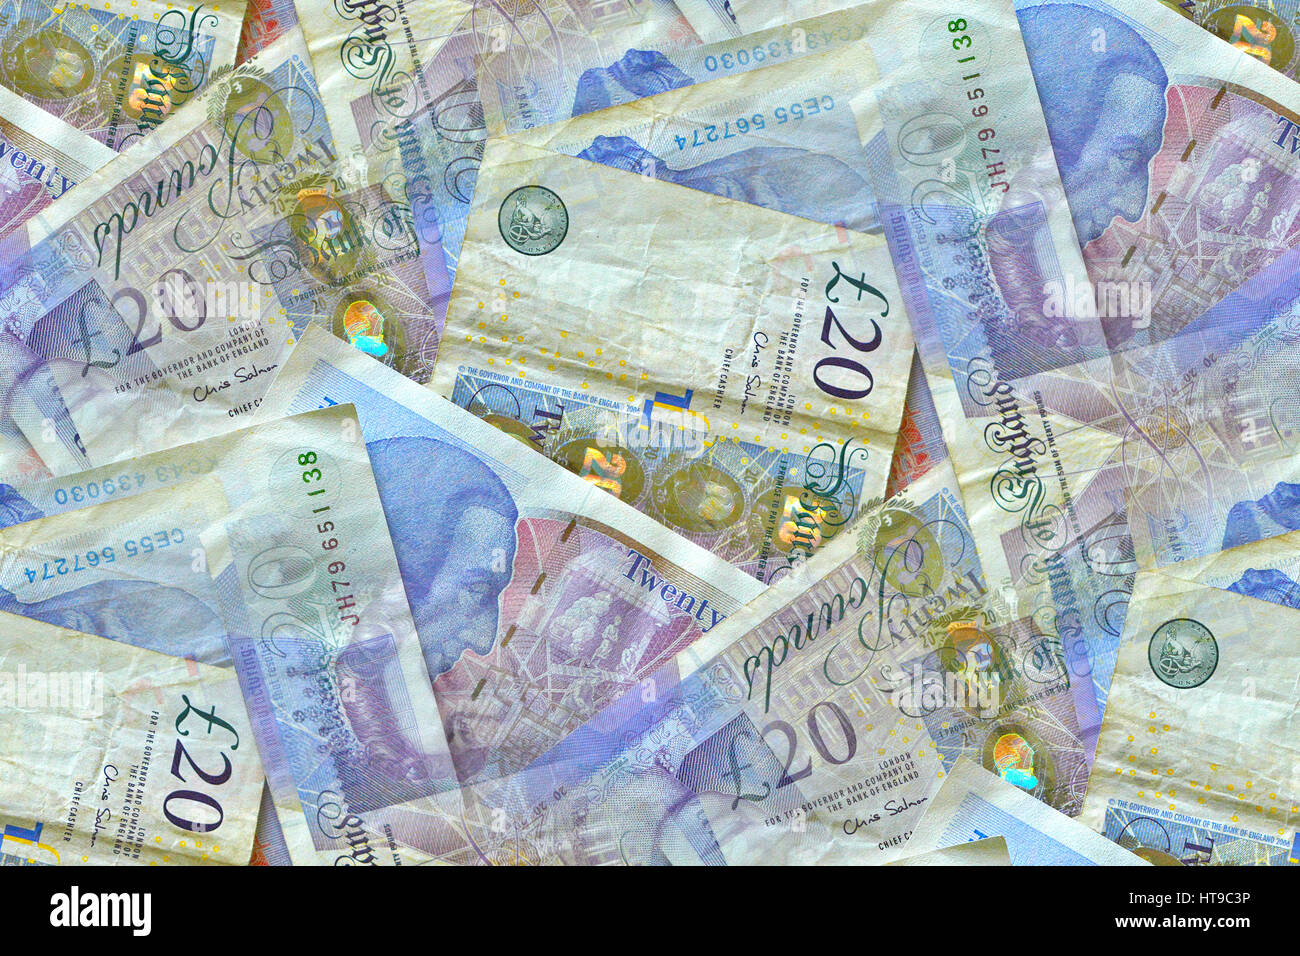 Eine zufällige Anzeige von 20-Pfund-Noten, die offizielle Währung des Vereinigten Königreichs Stockfoto